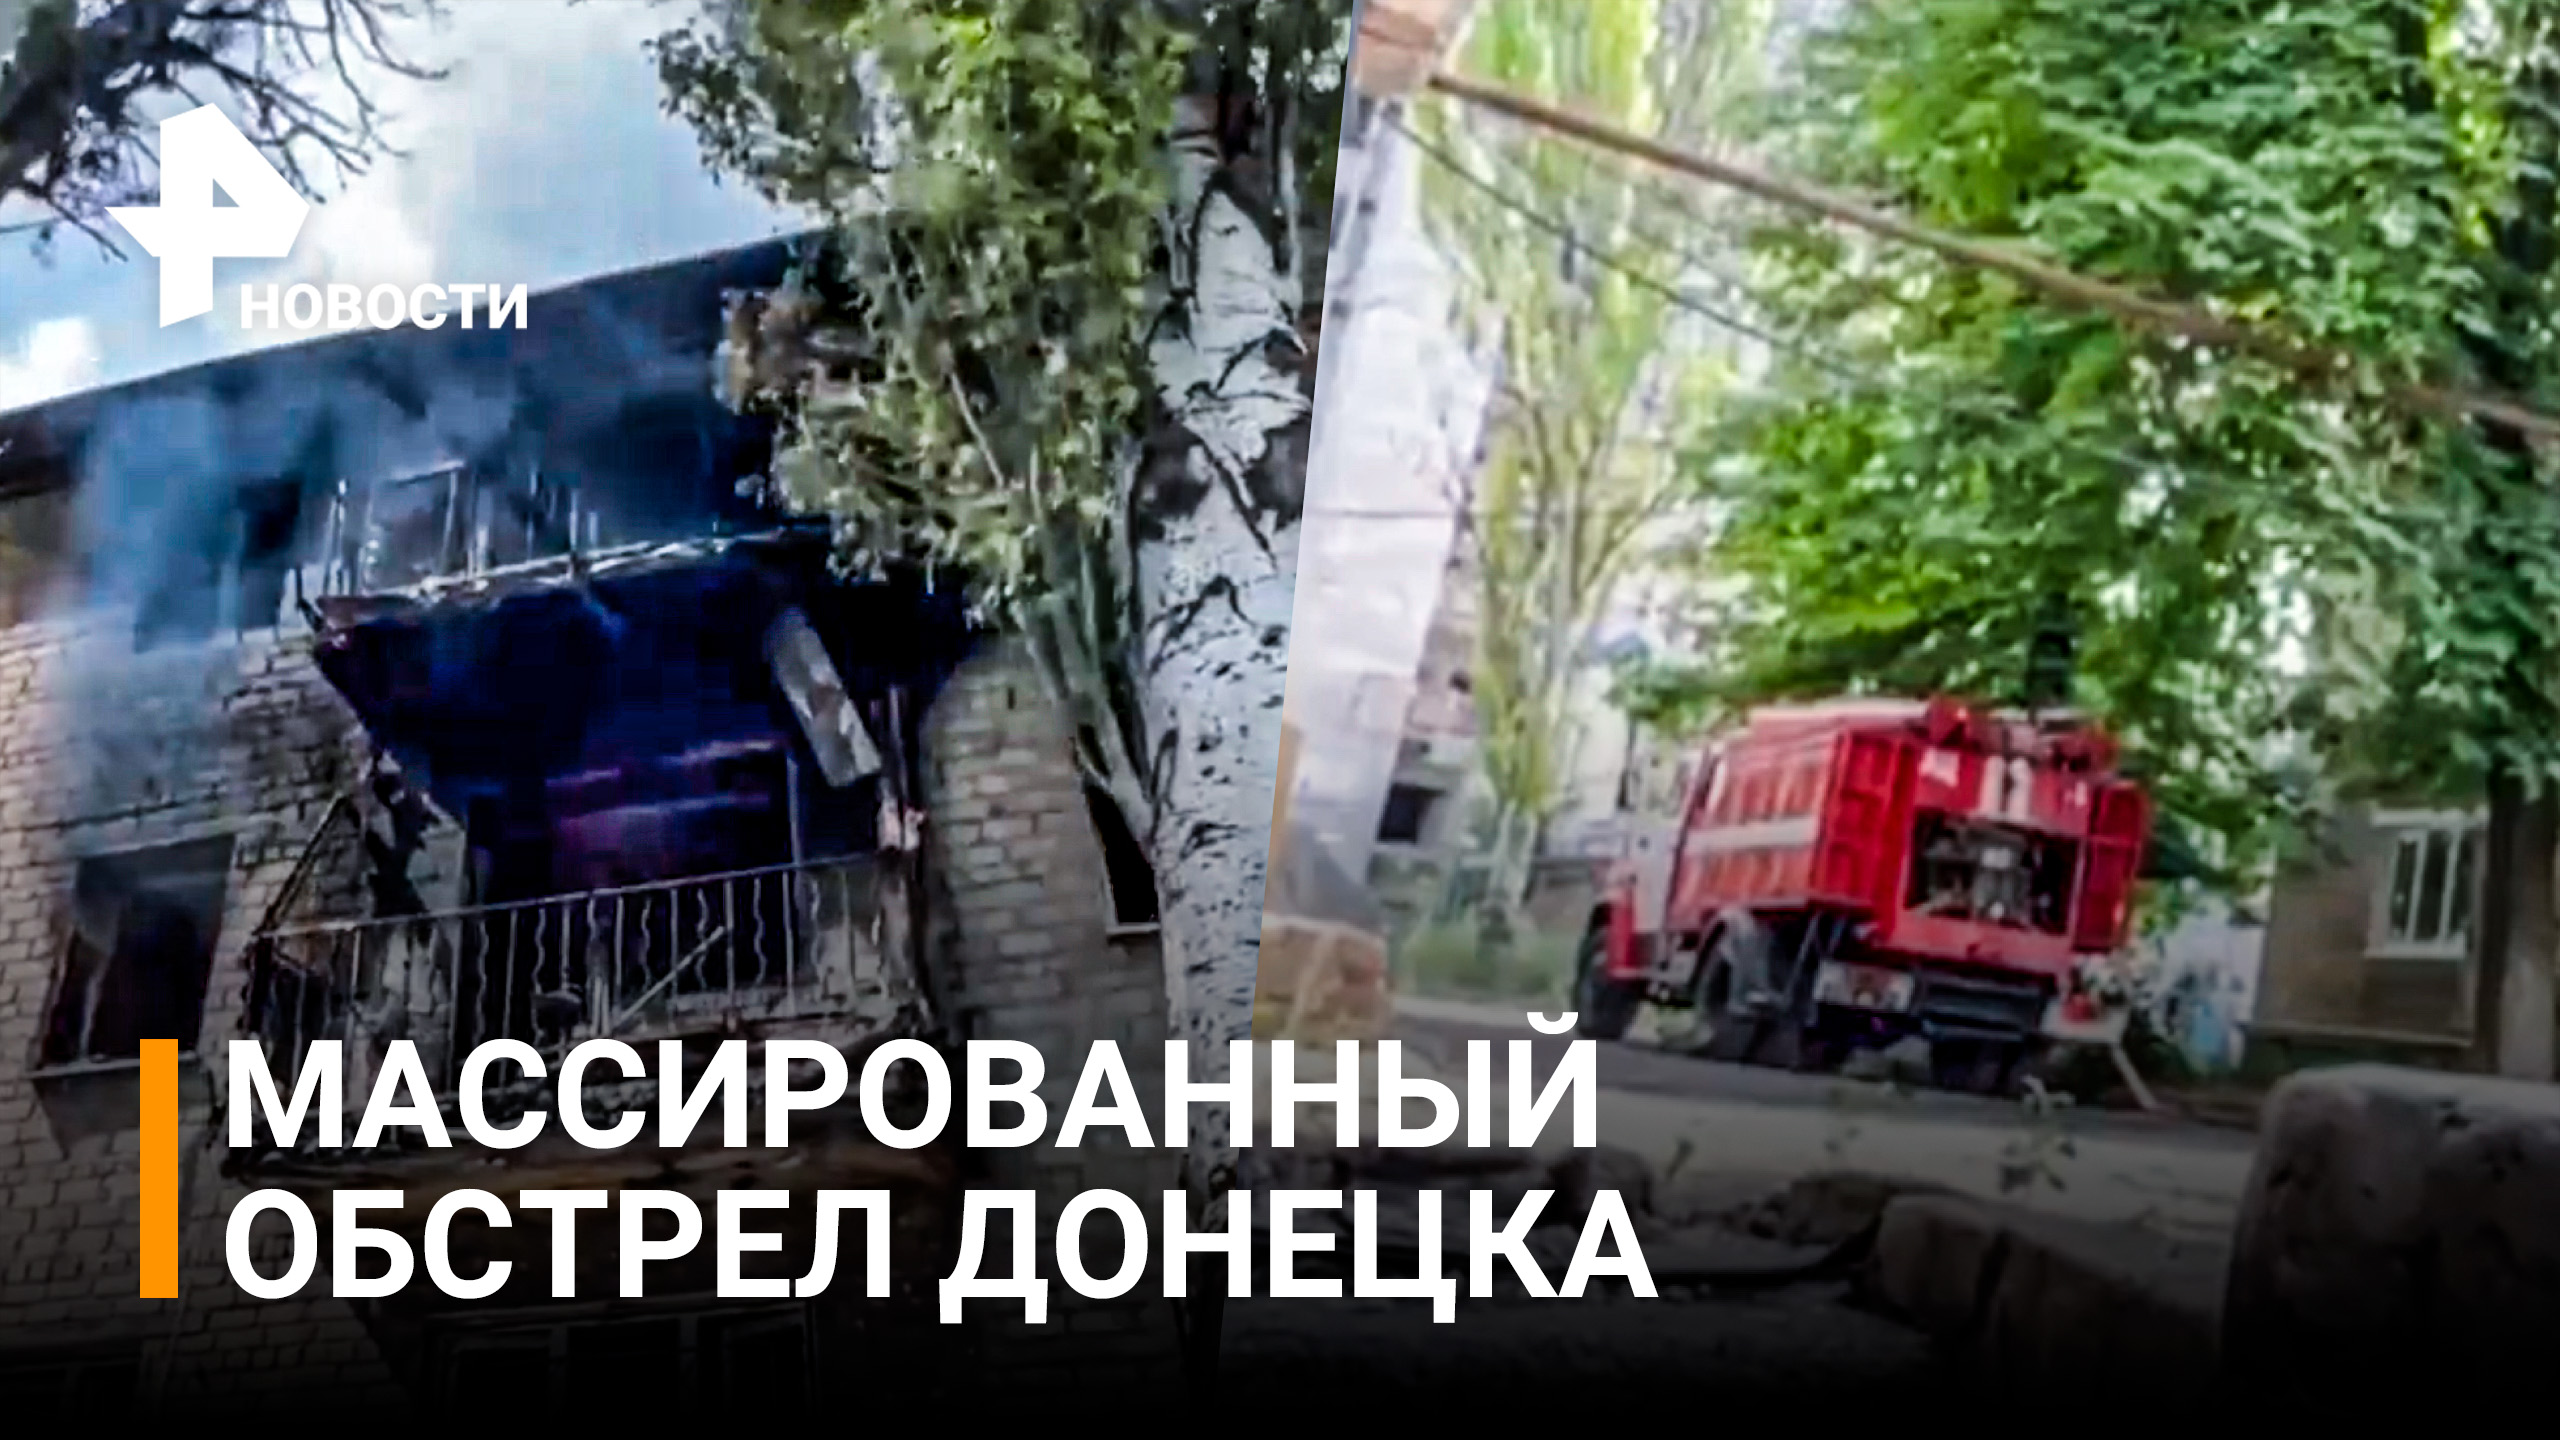 Новый массированный обстрел Донецка: военкор показал момент прилета снаряда / РЕН Новости